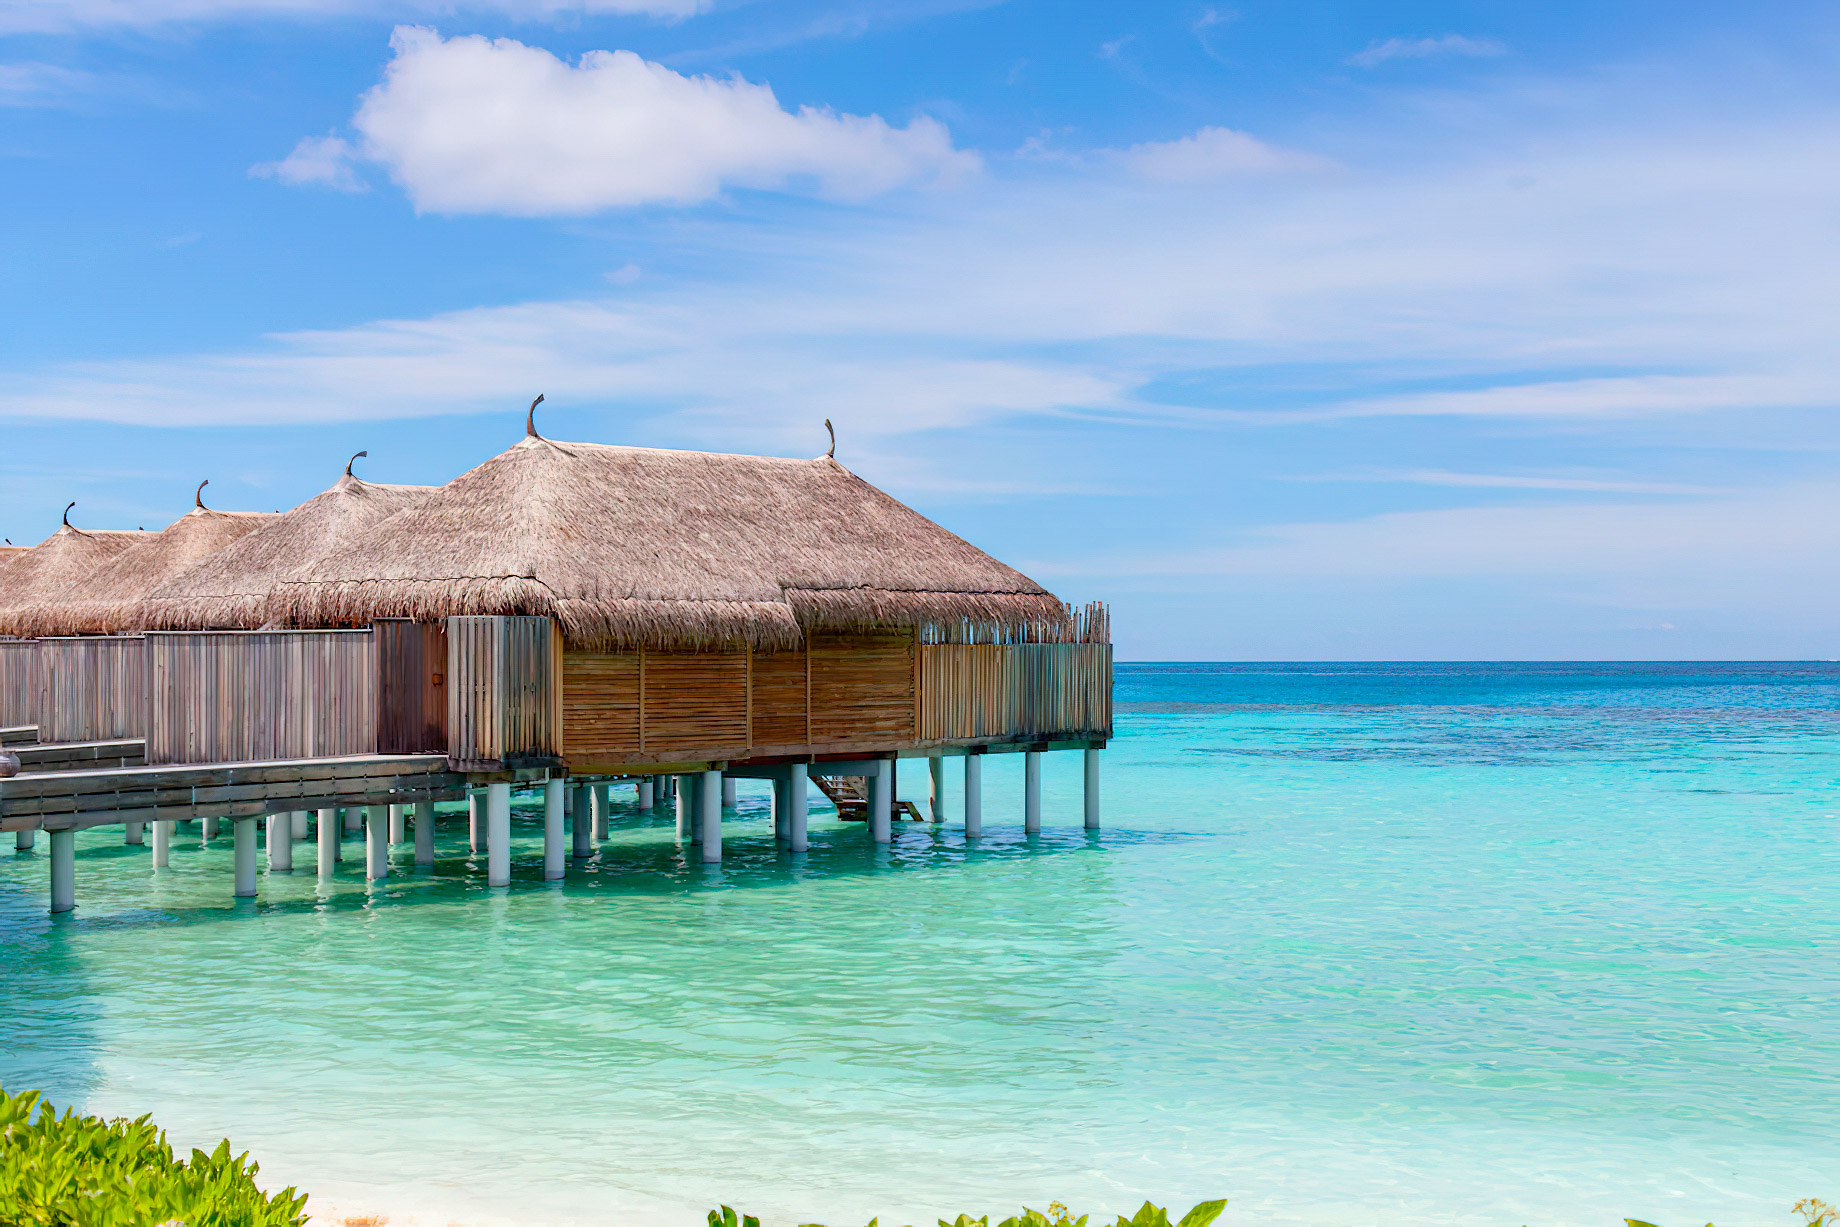 Constance Moofushi Resort - South Ari Atoll, Maldives - Overwater Villa View